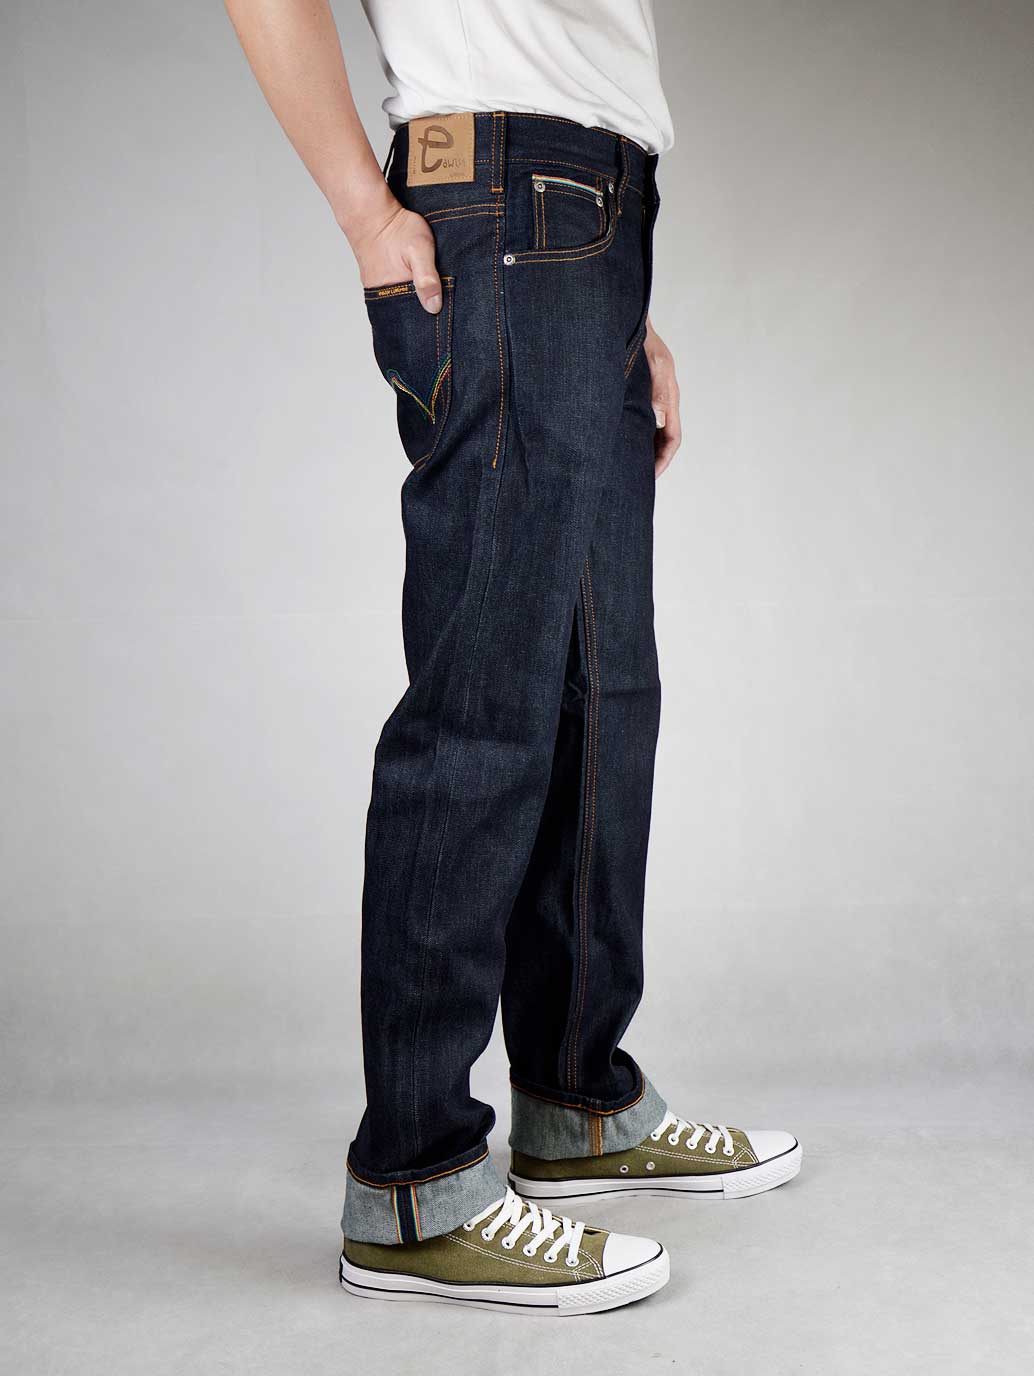 encuentro Debería Bien educado Edwin Men's 505 Rainbow Selvage Jeans – EDWIN® Official Online Store MY